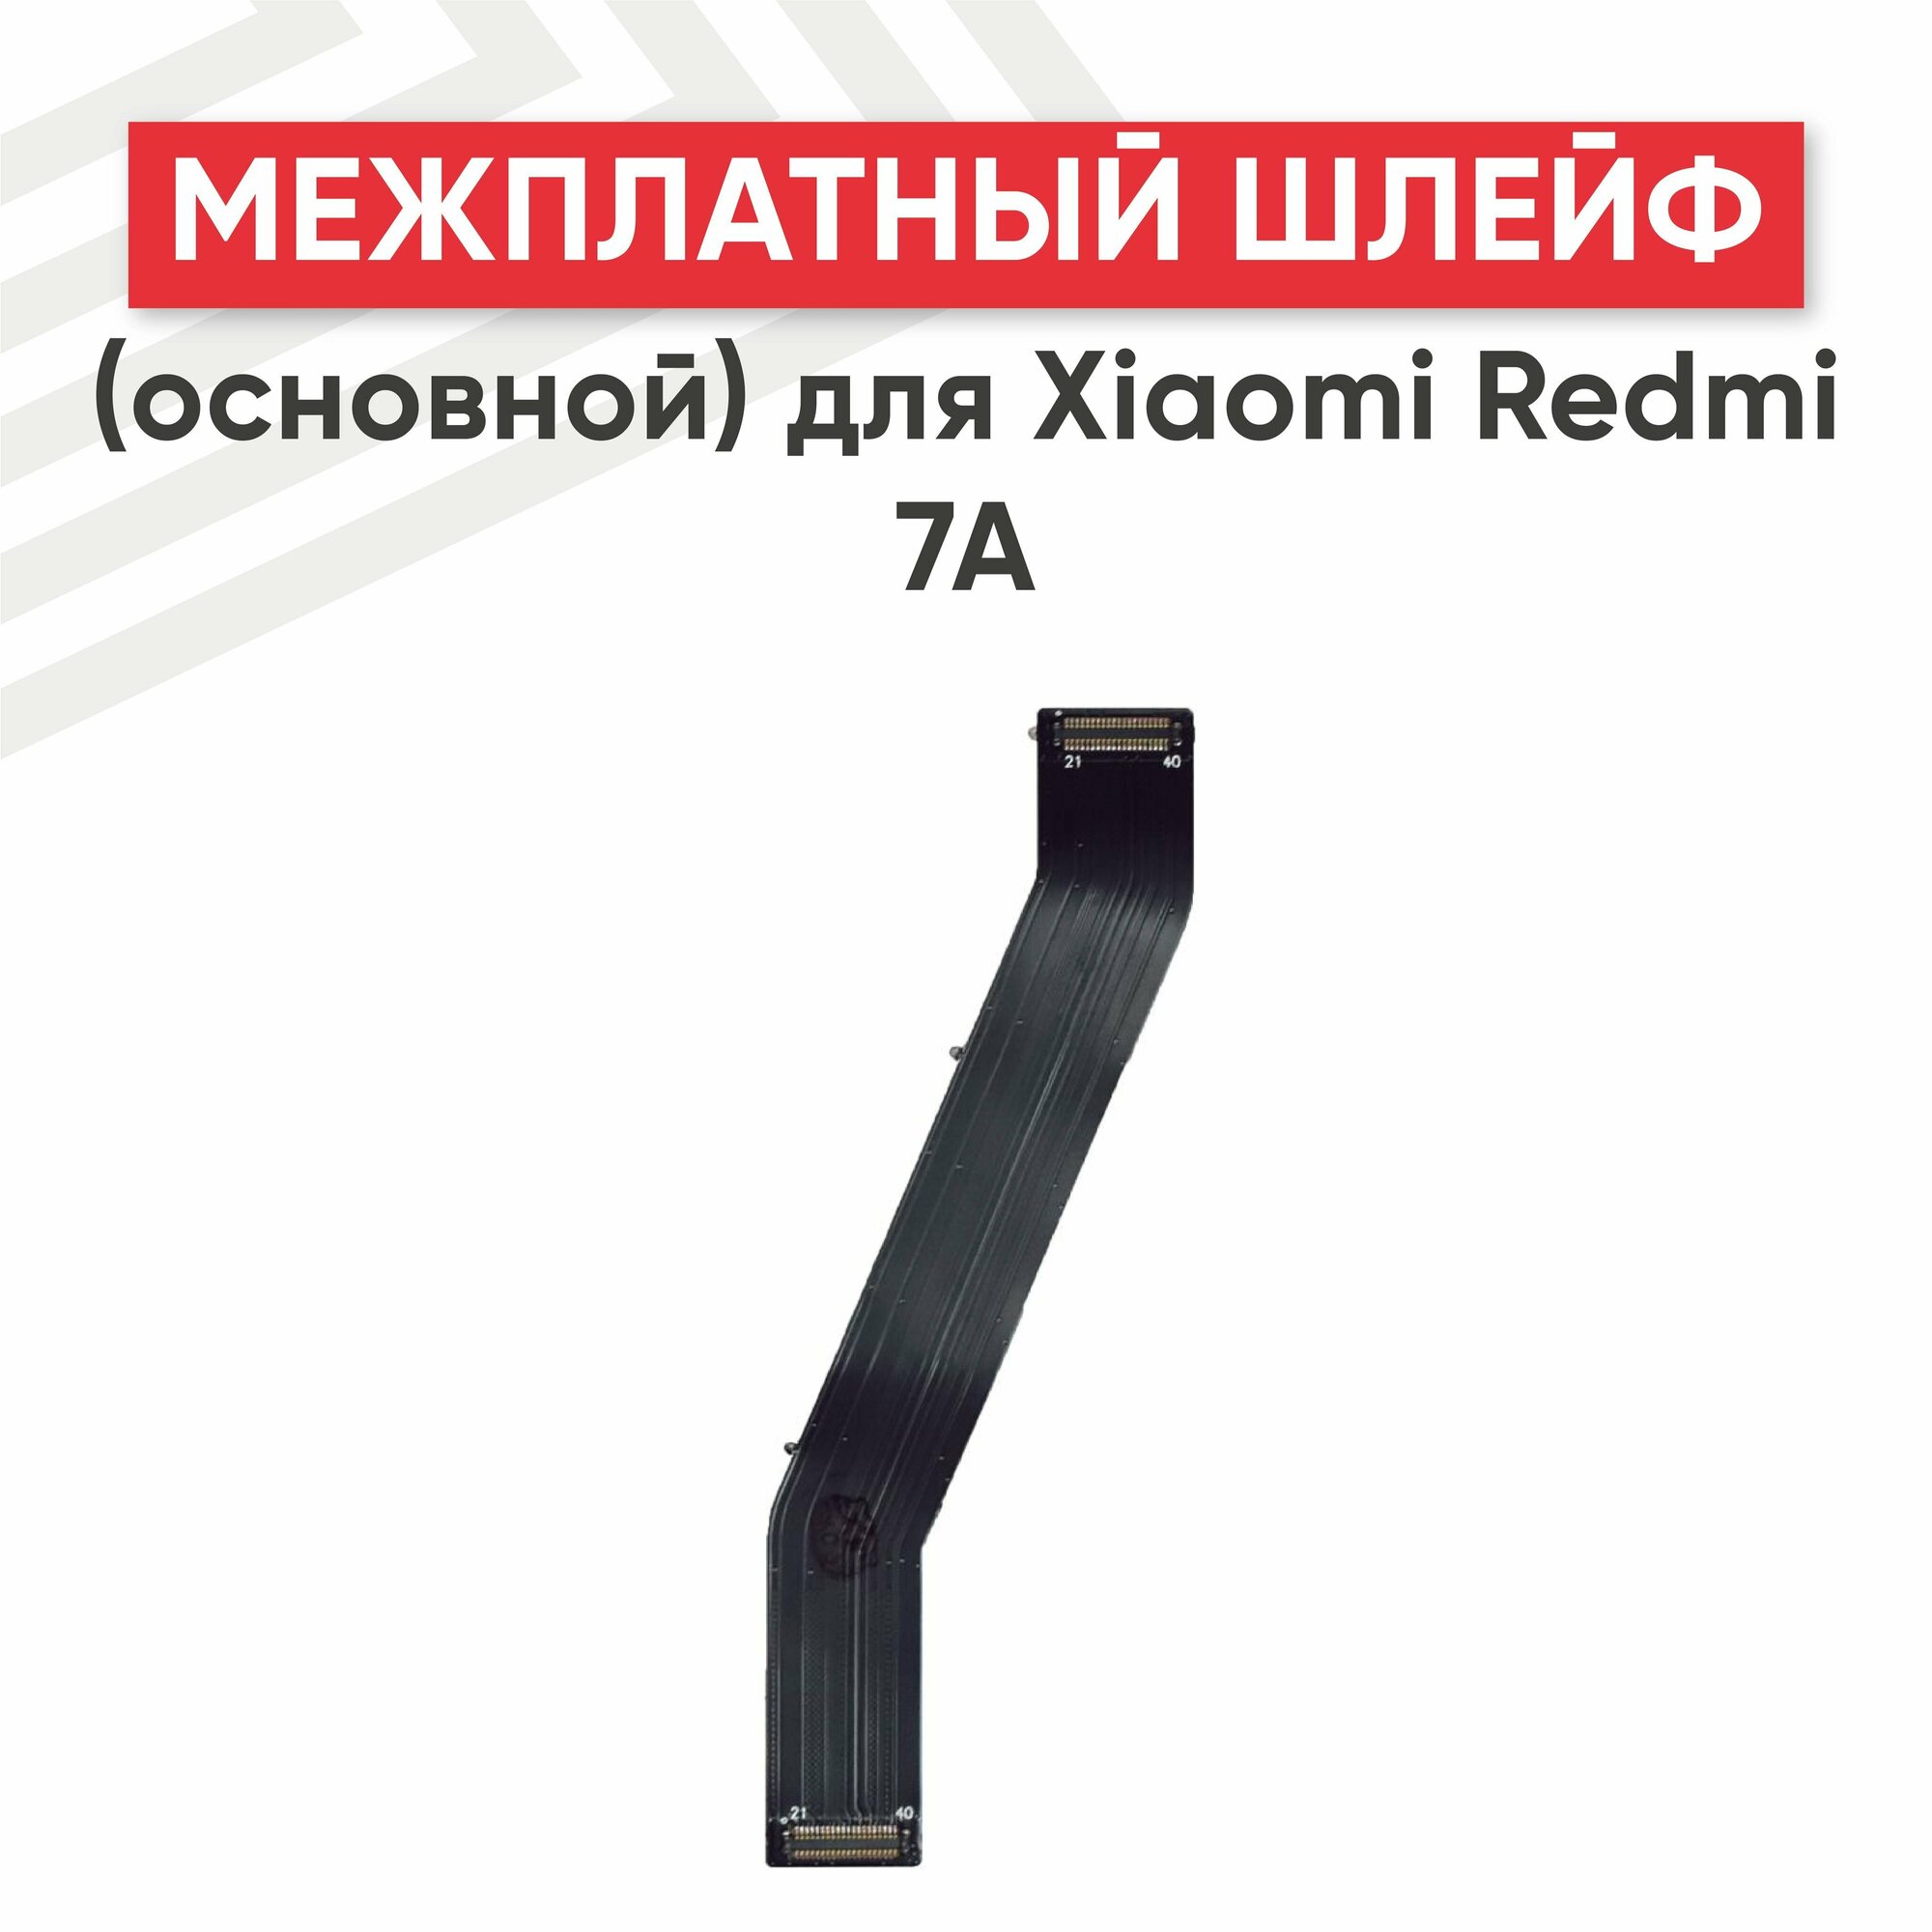 Межплатный шлейф (основной) для мобильного телефона (смартфона) Xiaomi Redmi 7a